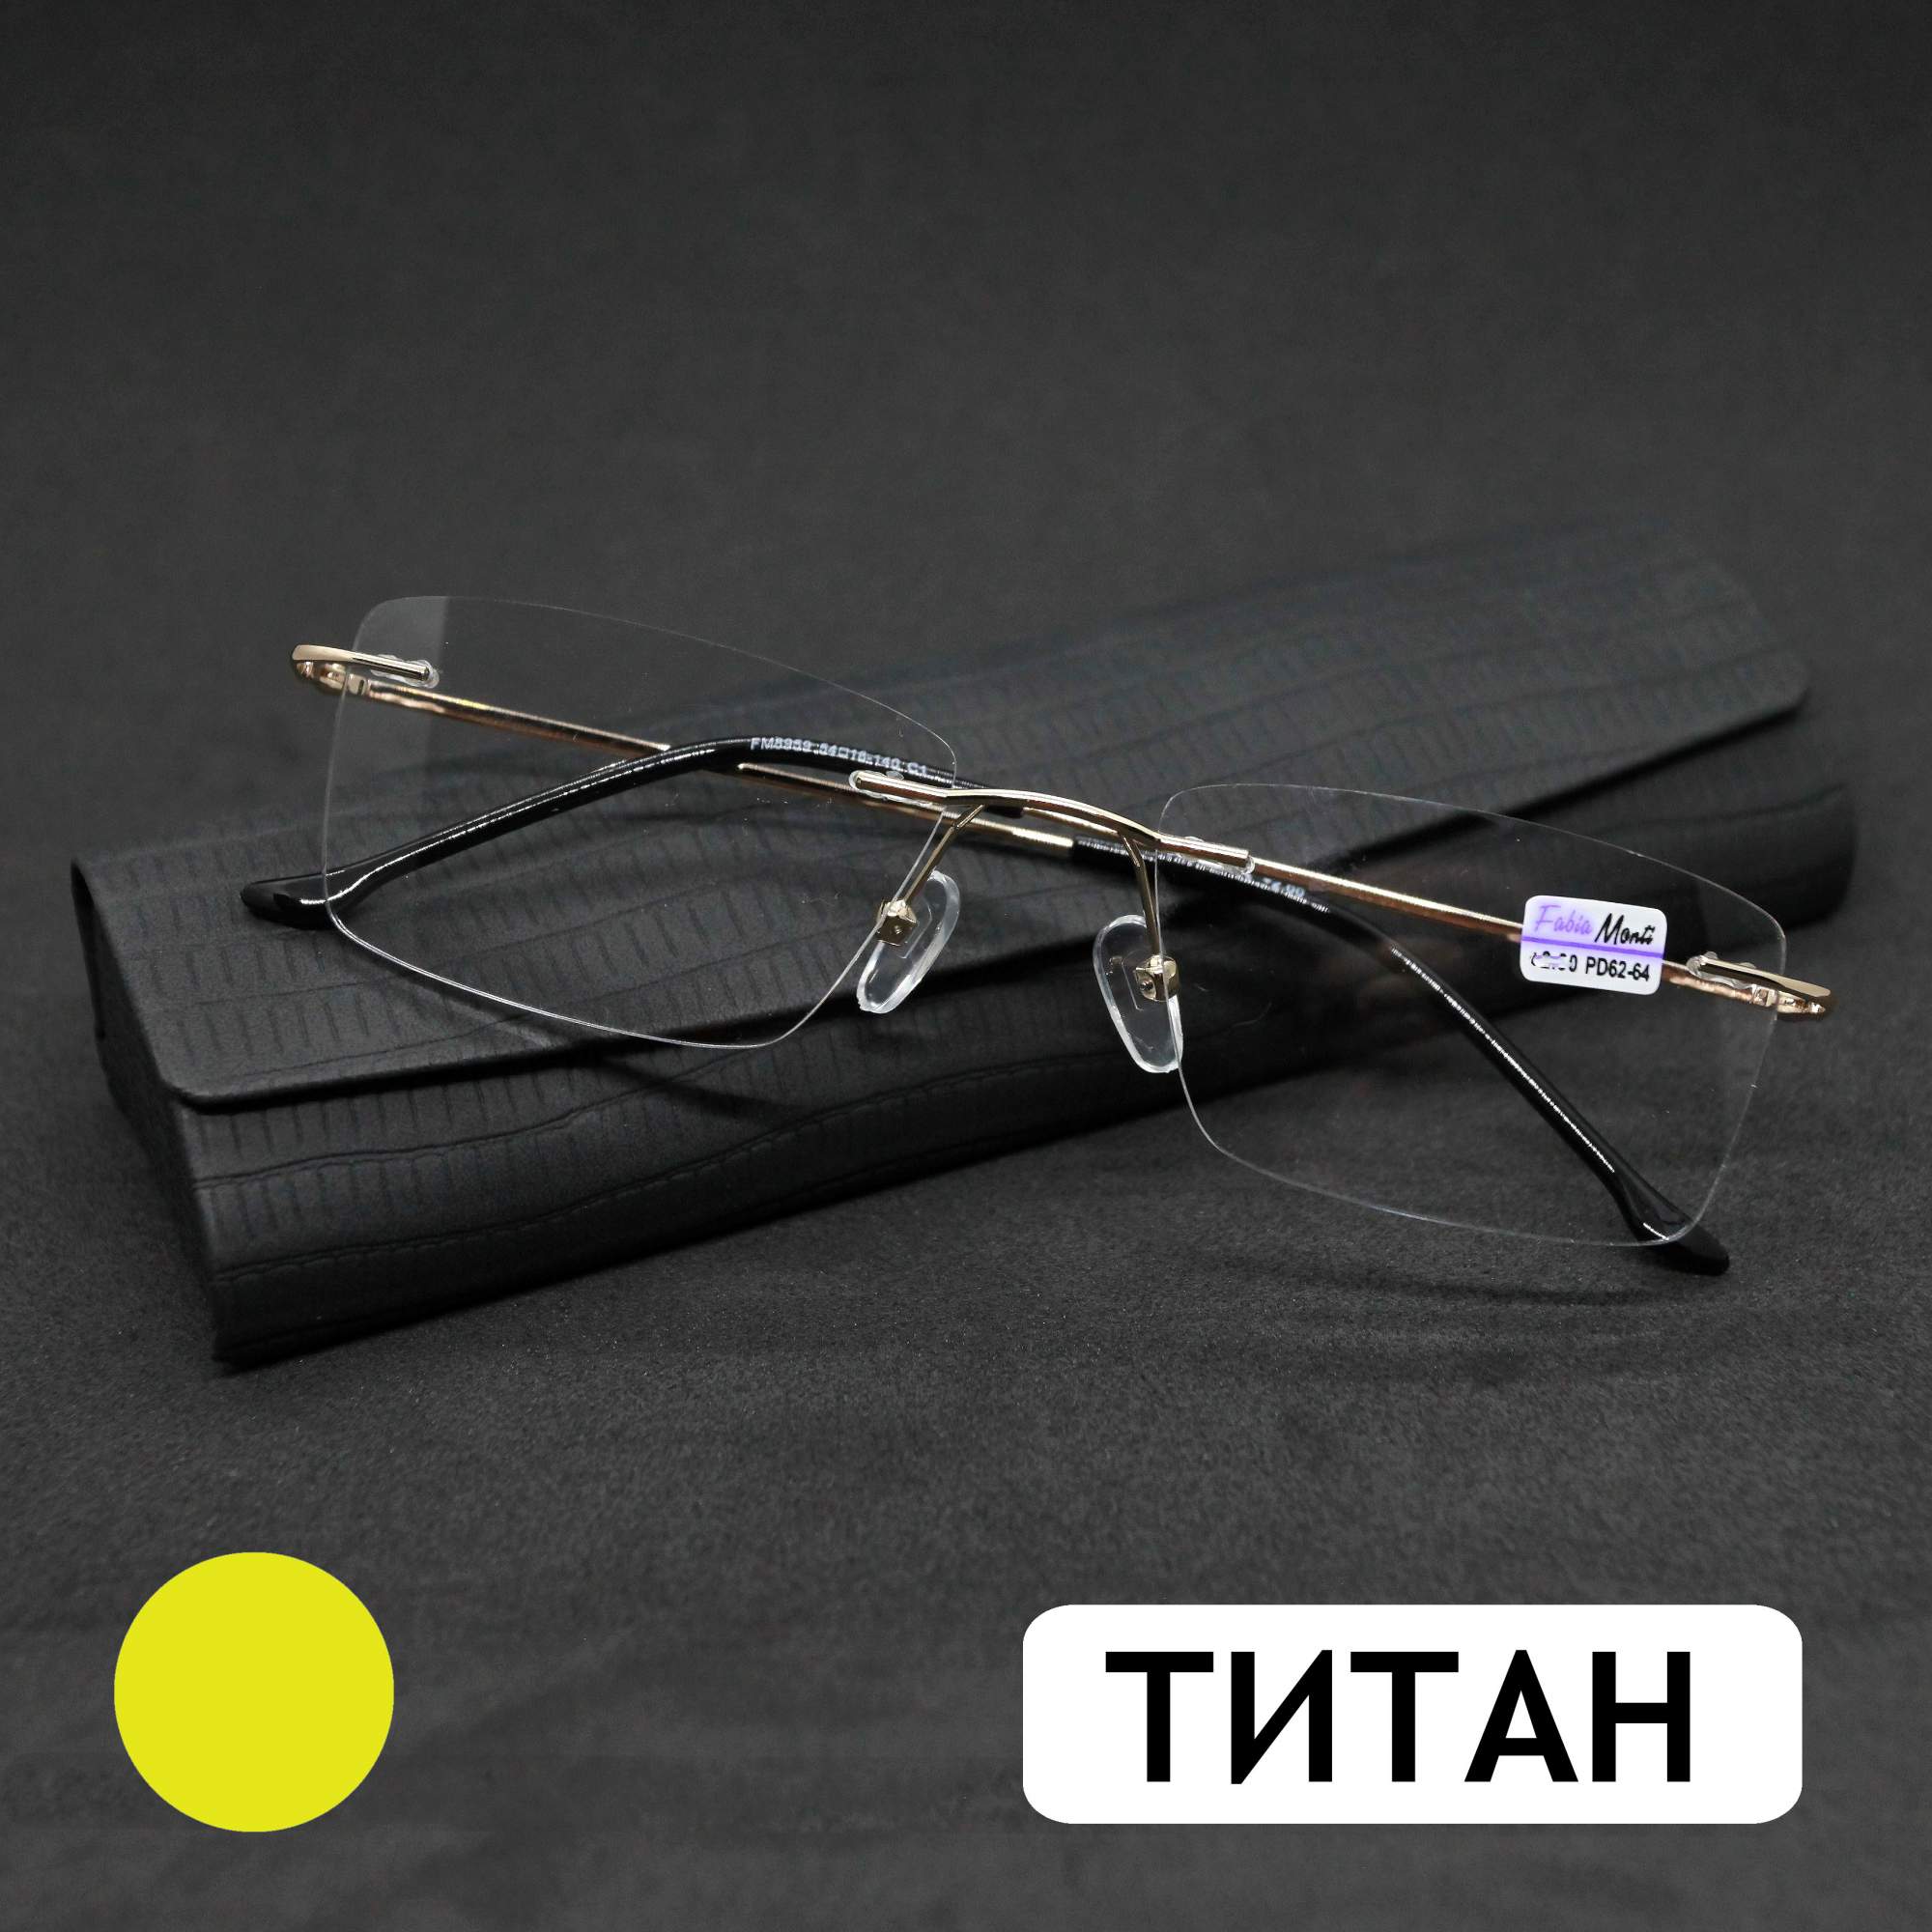 Безободковые очки FM 8959 +0.50, c футляром, оправа титан, золотые, РЦ 62-64